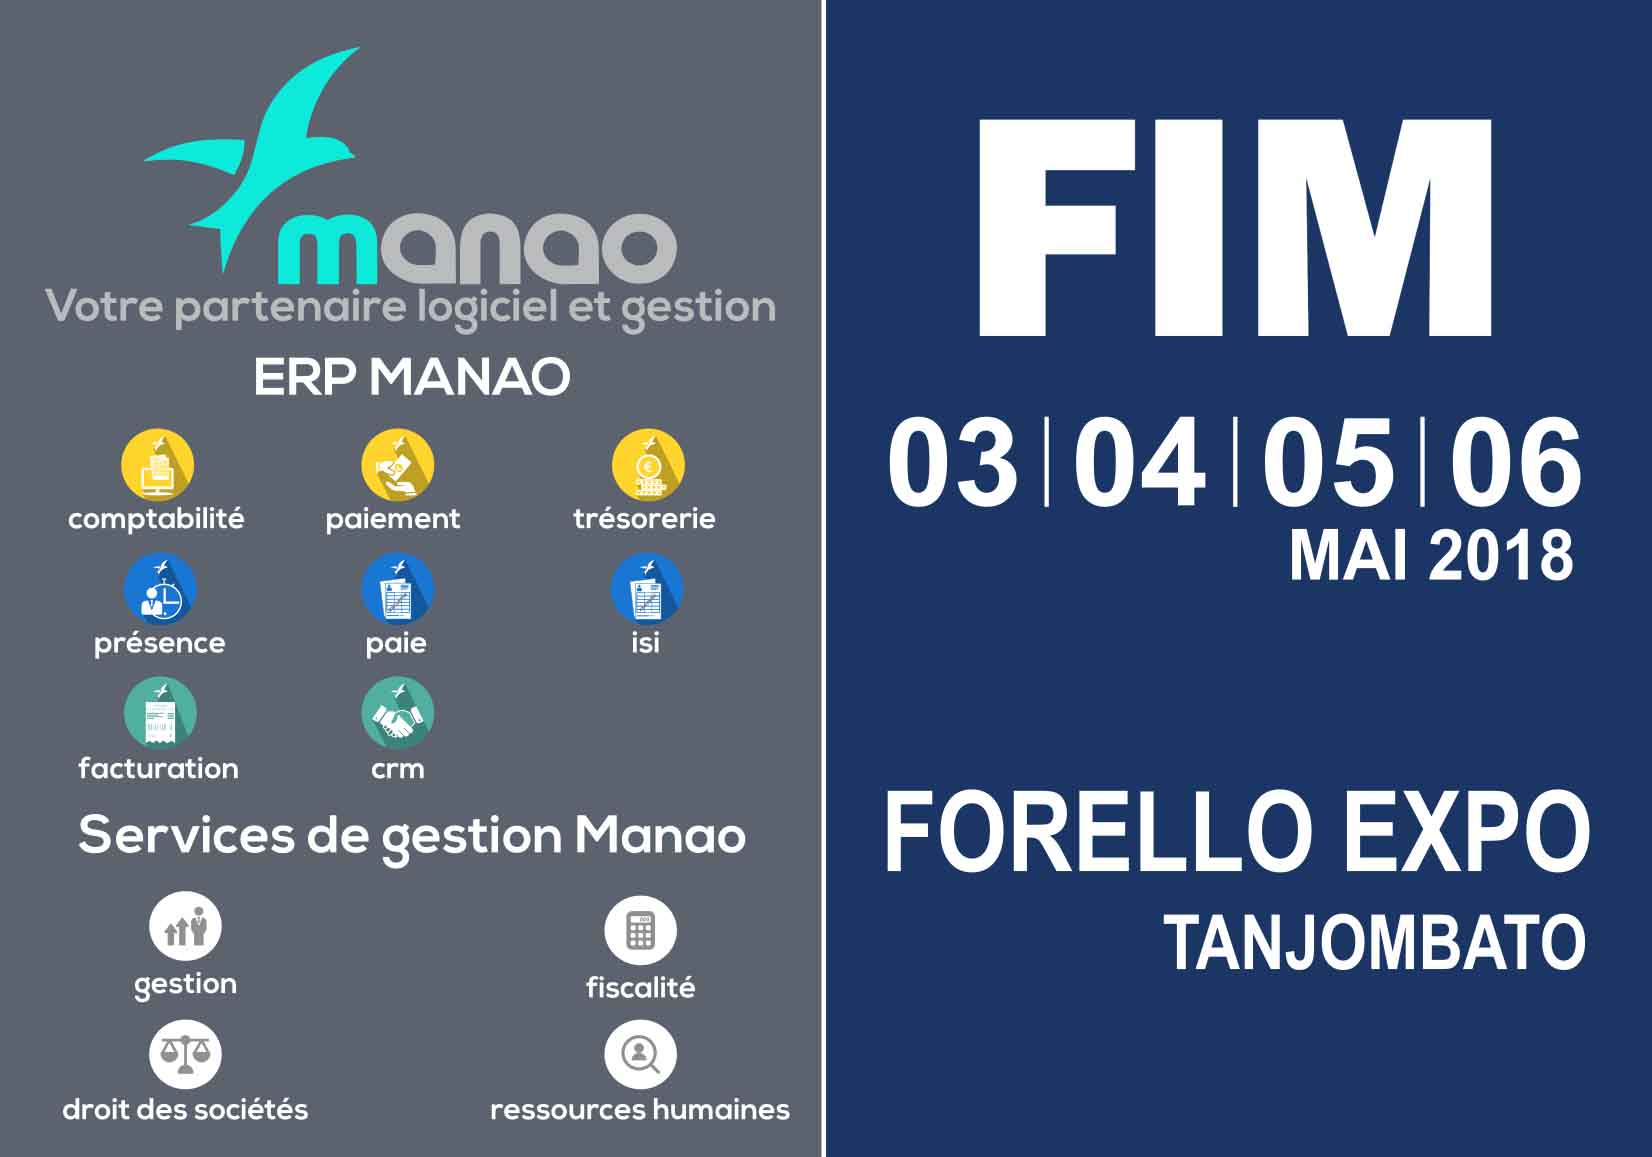 Image annonçant la présence des offres logiciels et services en gestion de Manao au FORELLO EXPO Tanjombato du 03 au 06 avril 2018, offrant l'opportunité aux visiteurs de découvrir les solutions de l'entreprise.